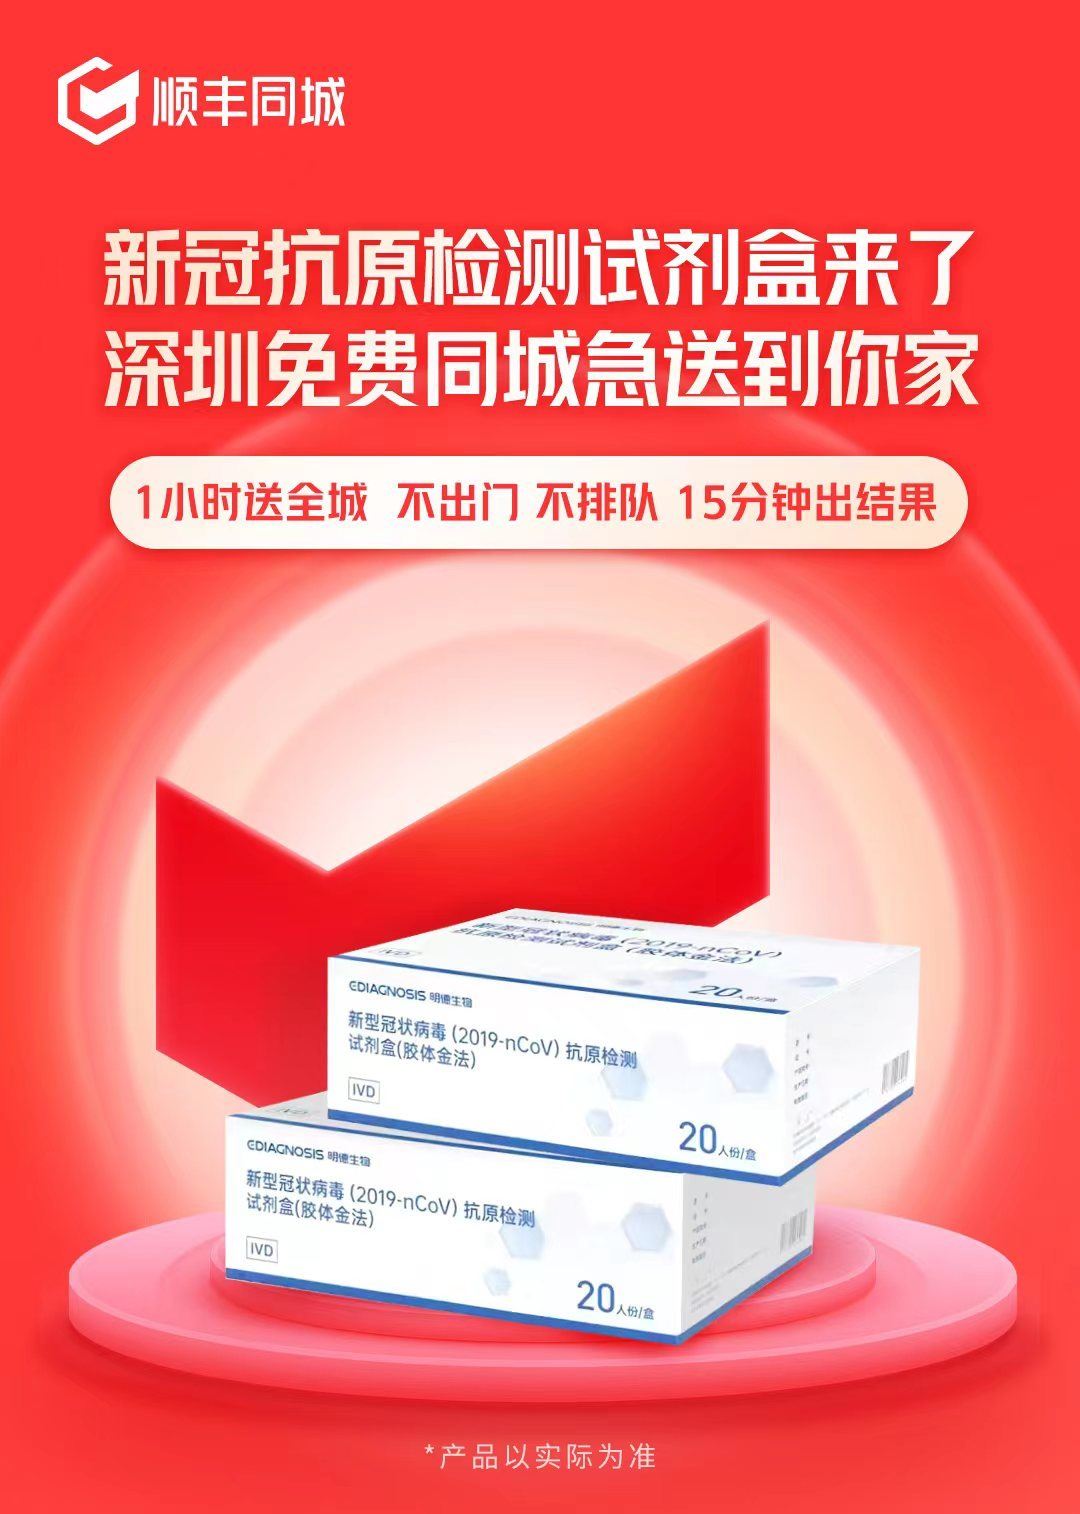 顺丰同城将向深圳上海部分地区免费派放1万剂新冠抗原检测包